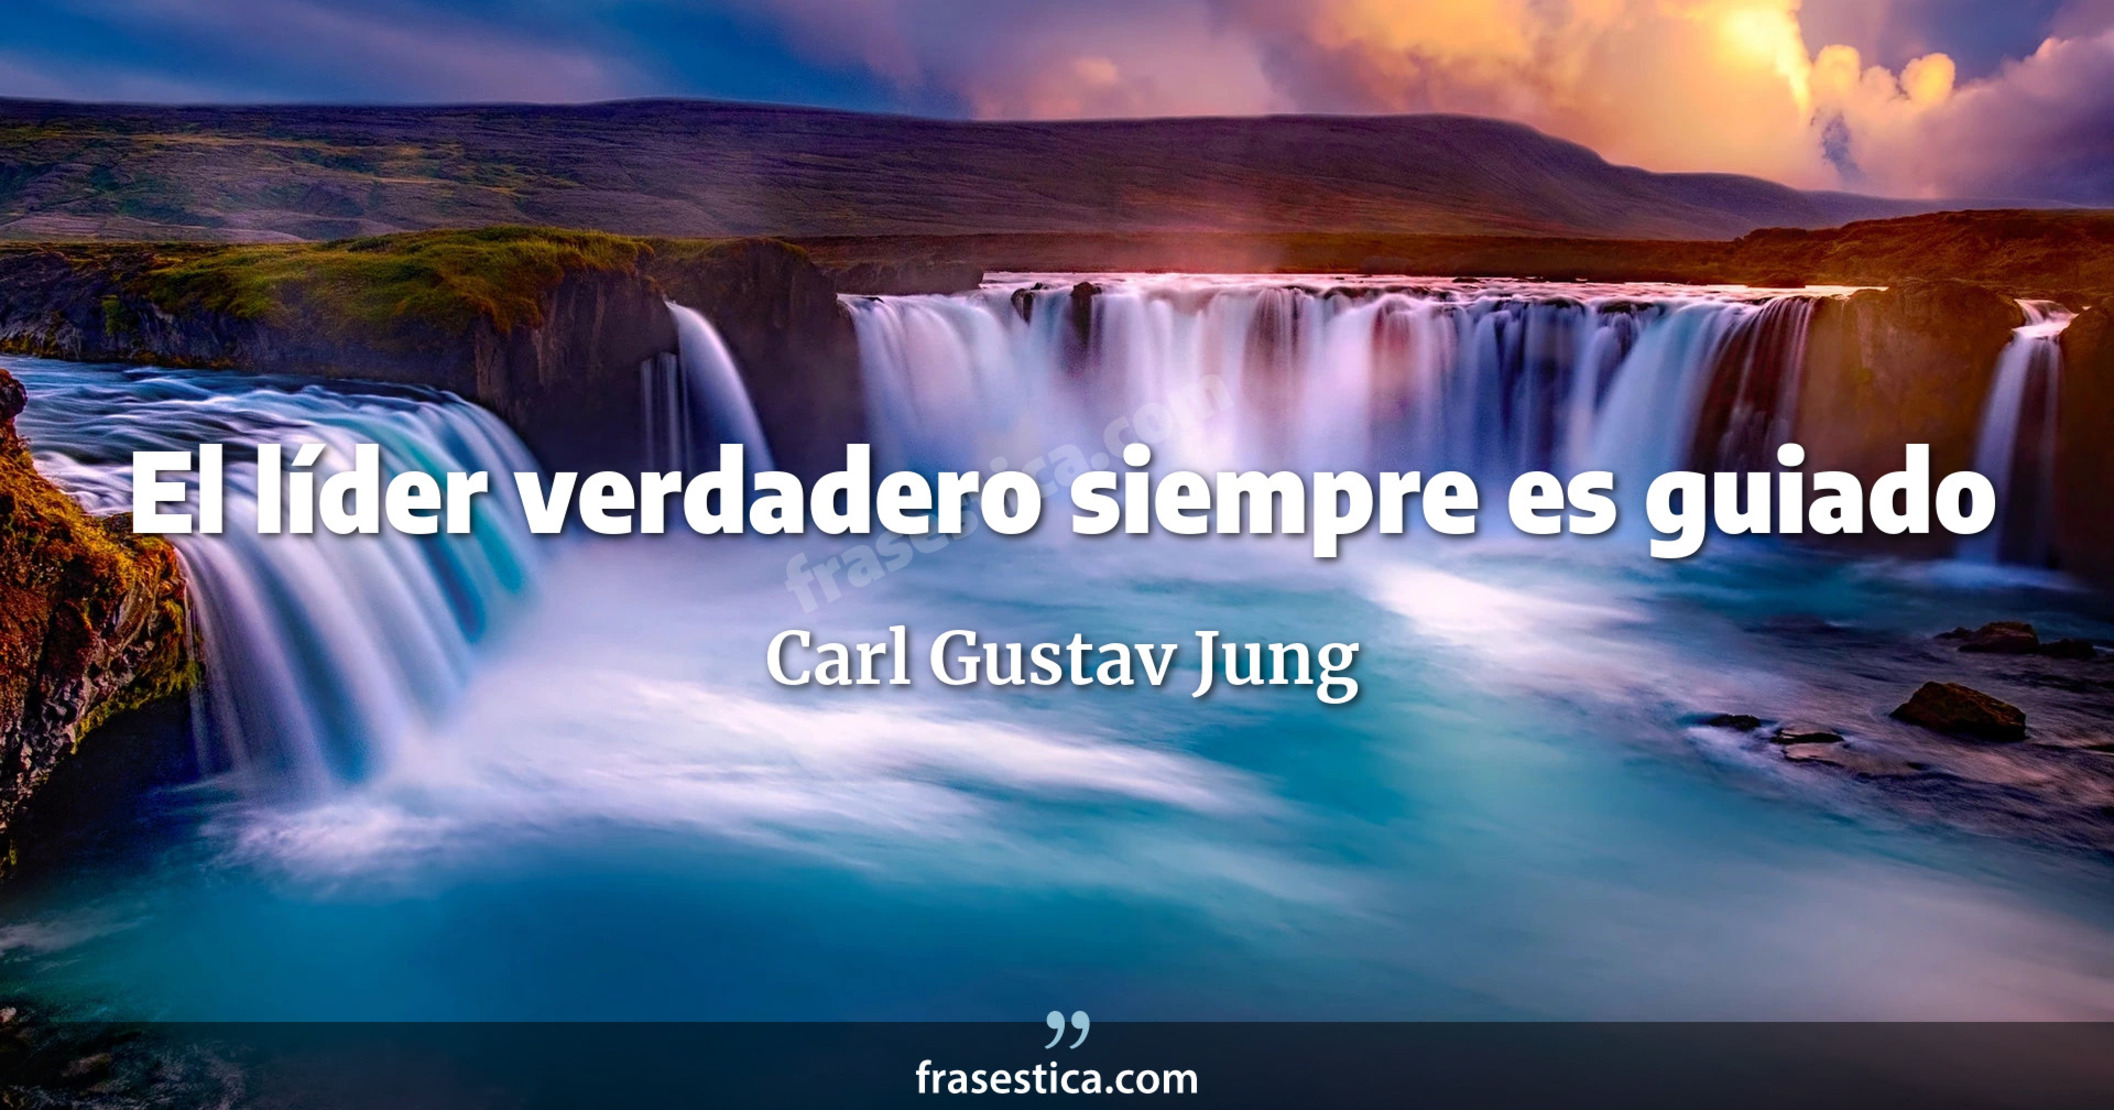 El líder verdadero siempre es guiado - Carl Gustav Jung